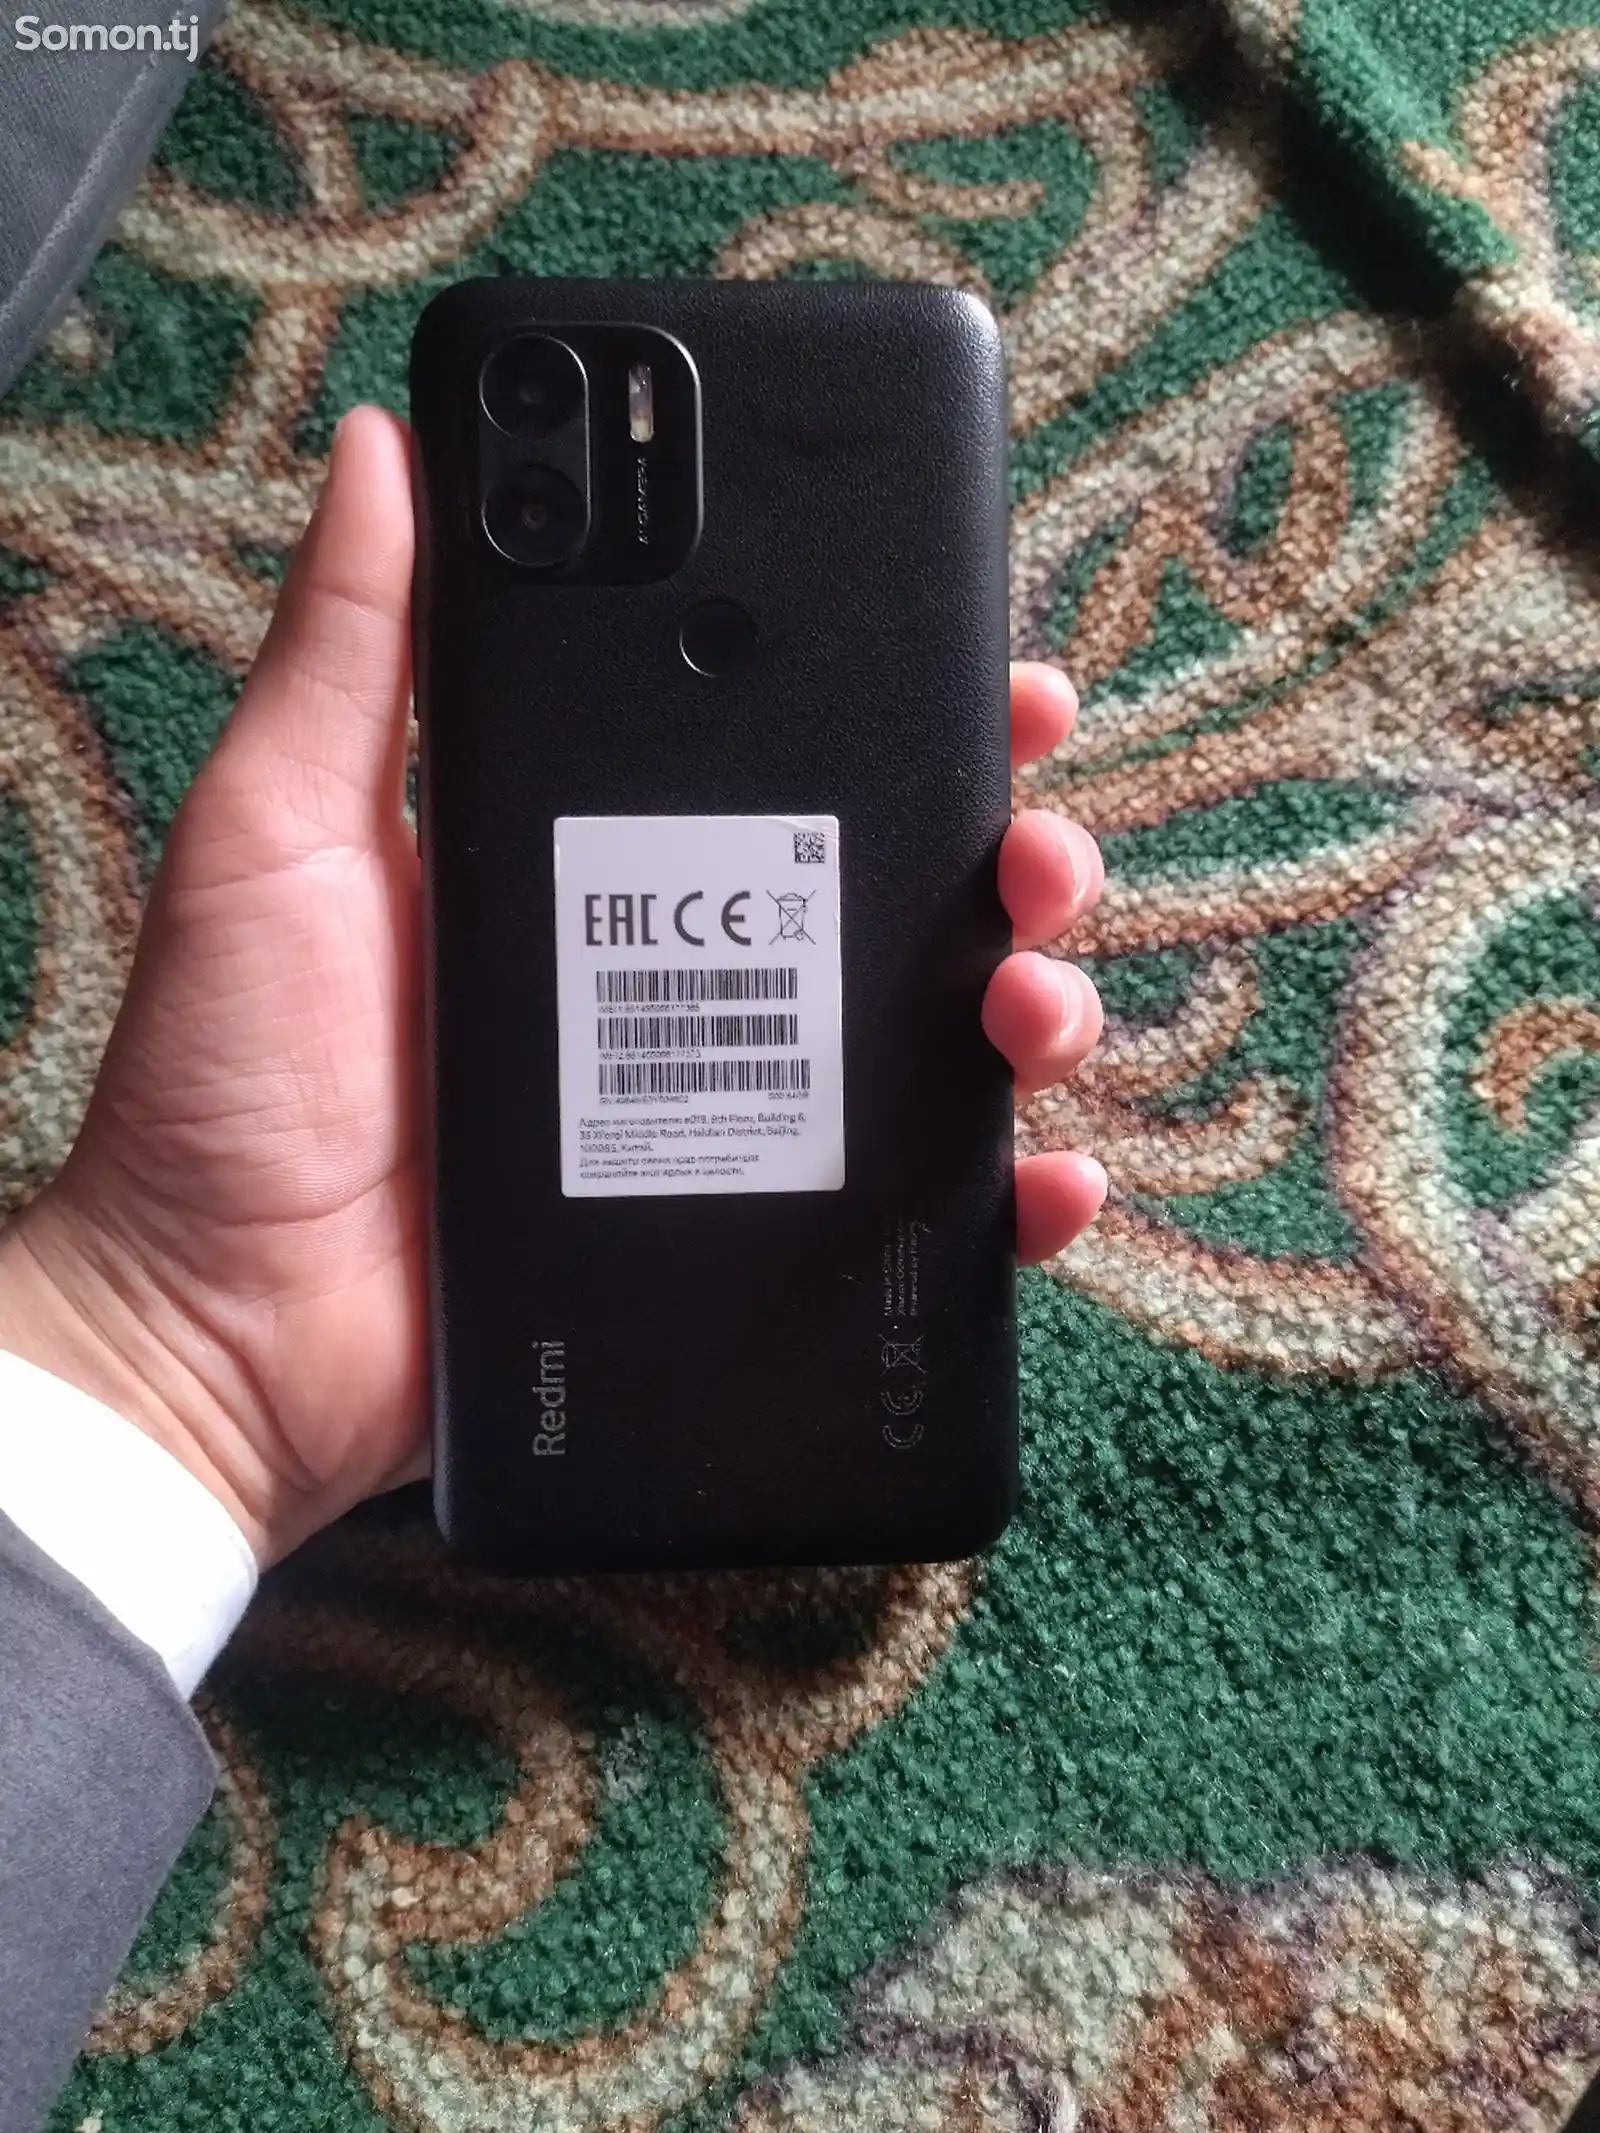 Xiaomi Redmi A2+-4